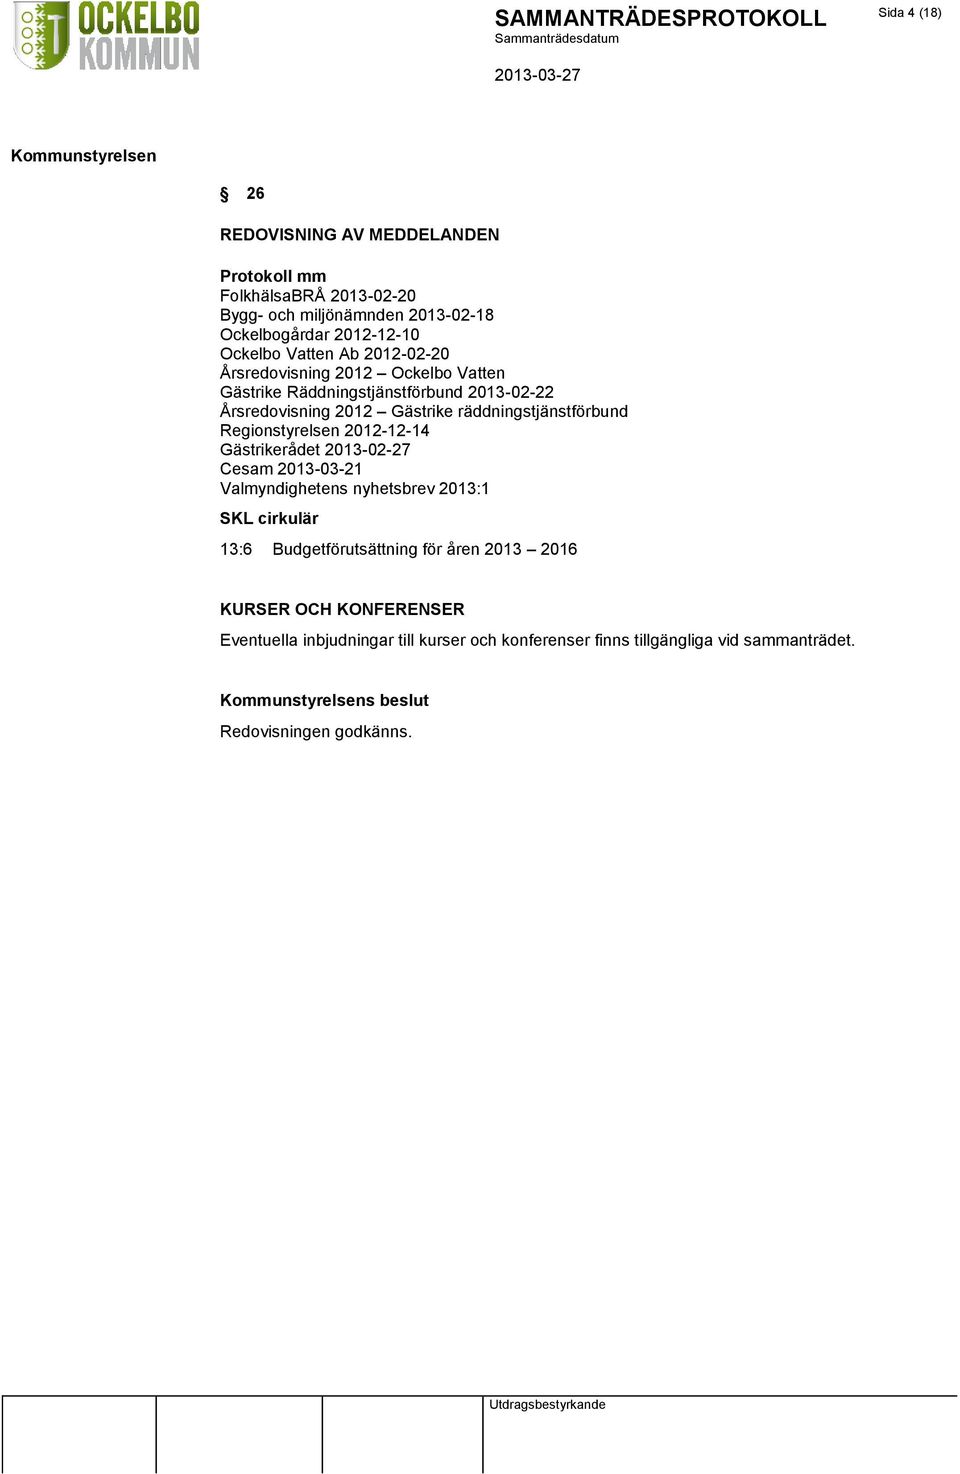 Regionstyrelsen 2012-12-14 Gästrikerådet 2013-02-27 Cesam 2013-03-21 Valmyndighetens nyhetsbrev 2013:1 SKL cirkulär 13:6 Budgetförutsättning för åren